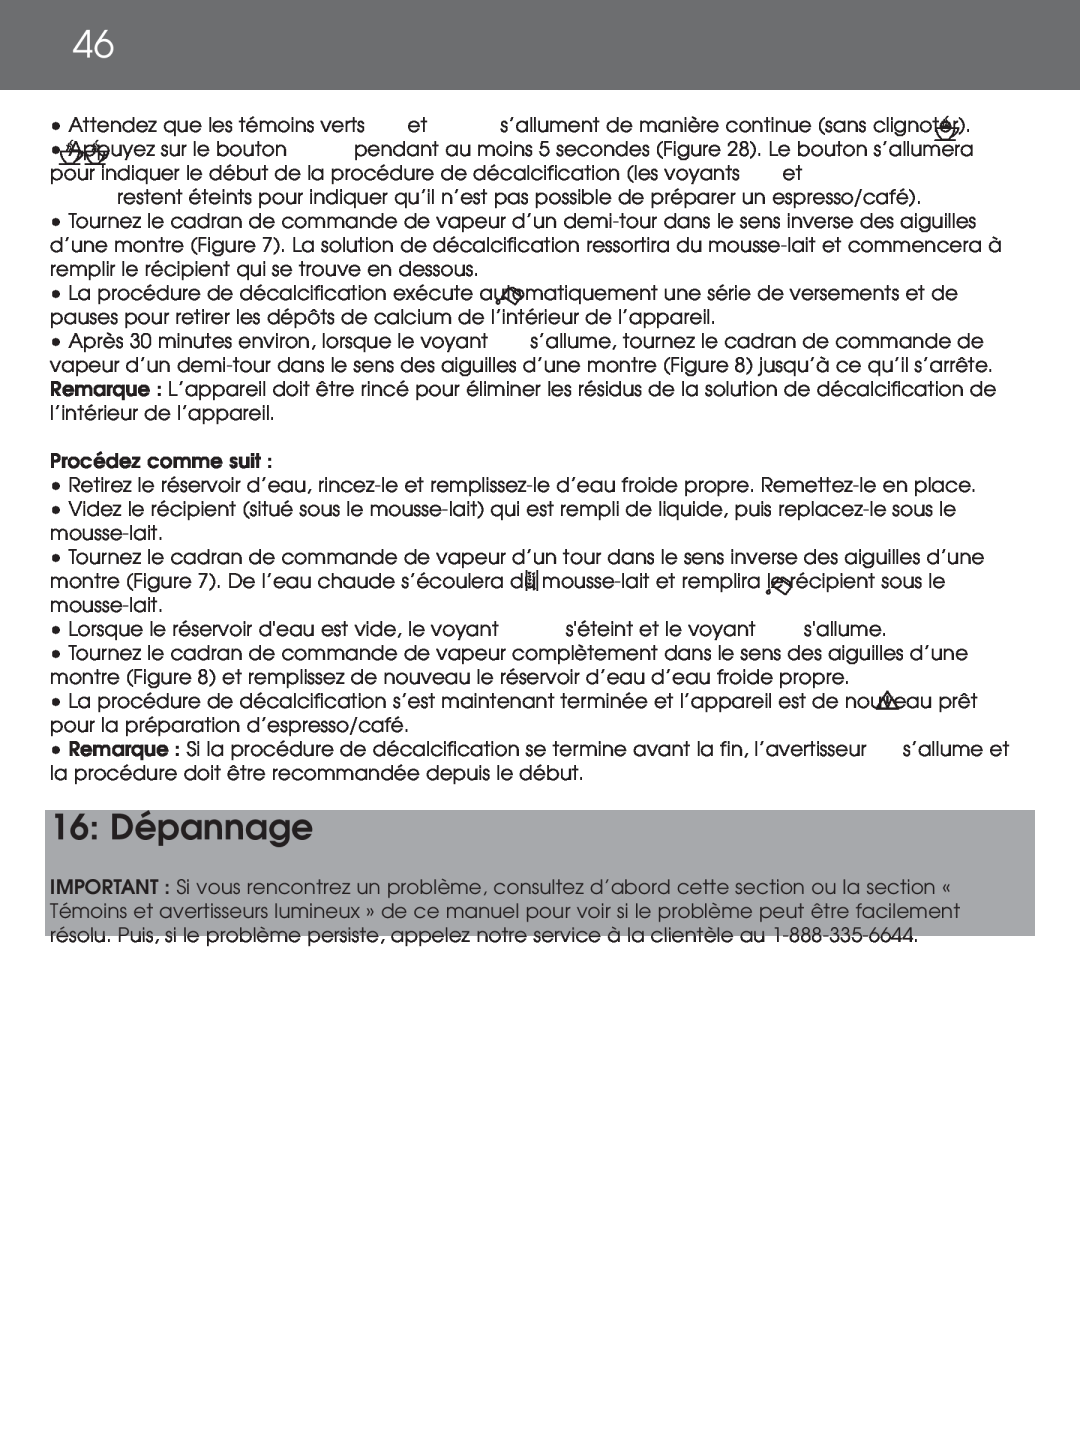 DeLonghi EAM4000 instruction manual 16: Dépannage 